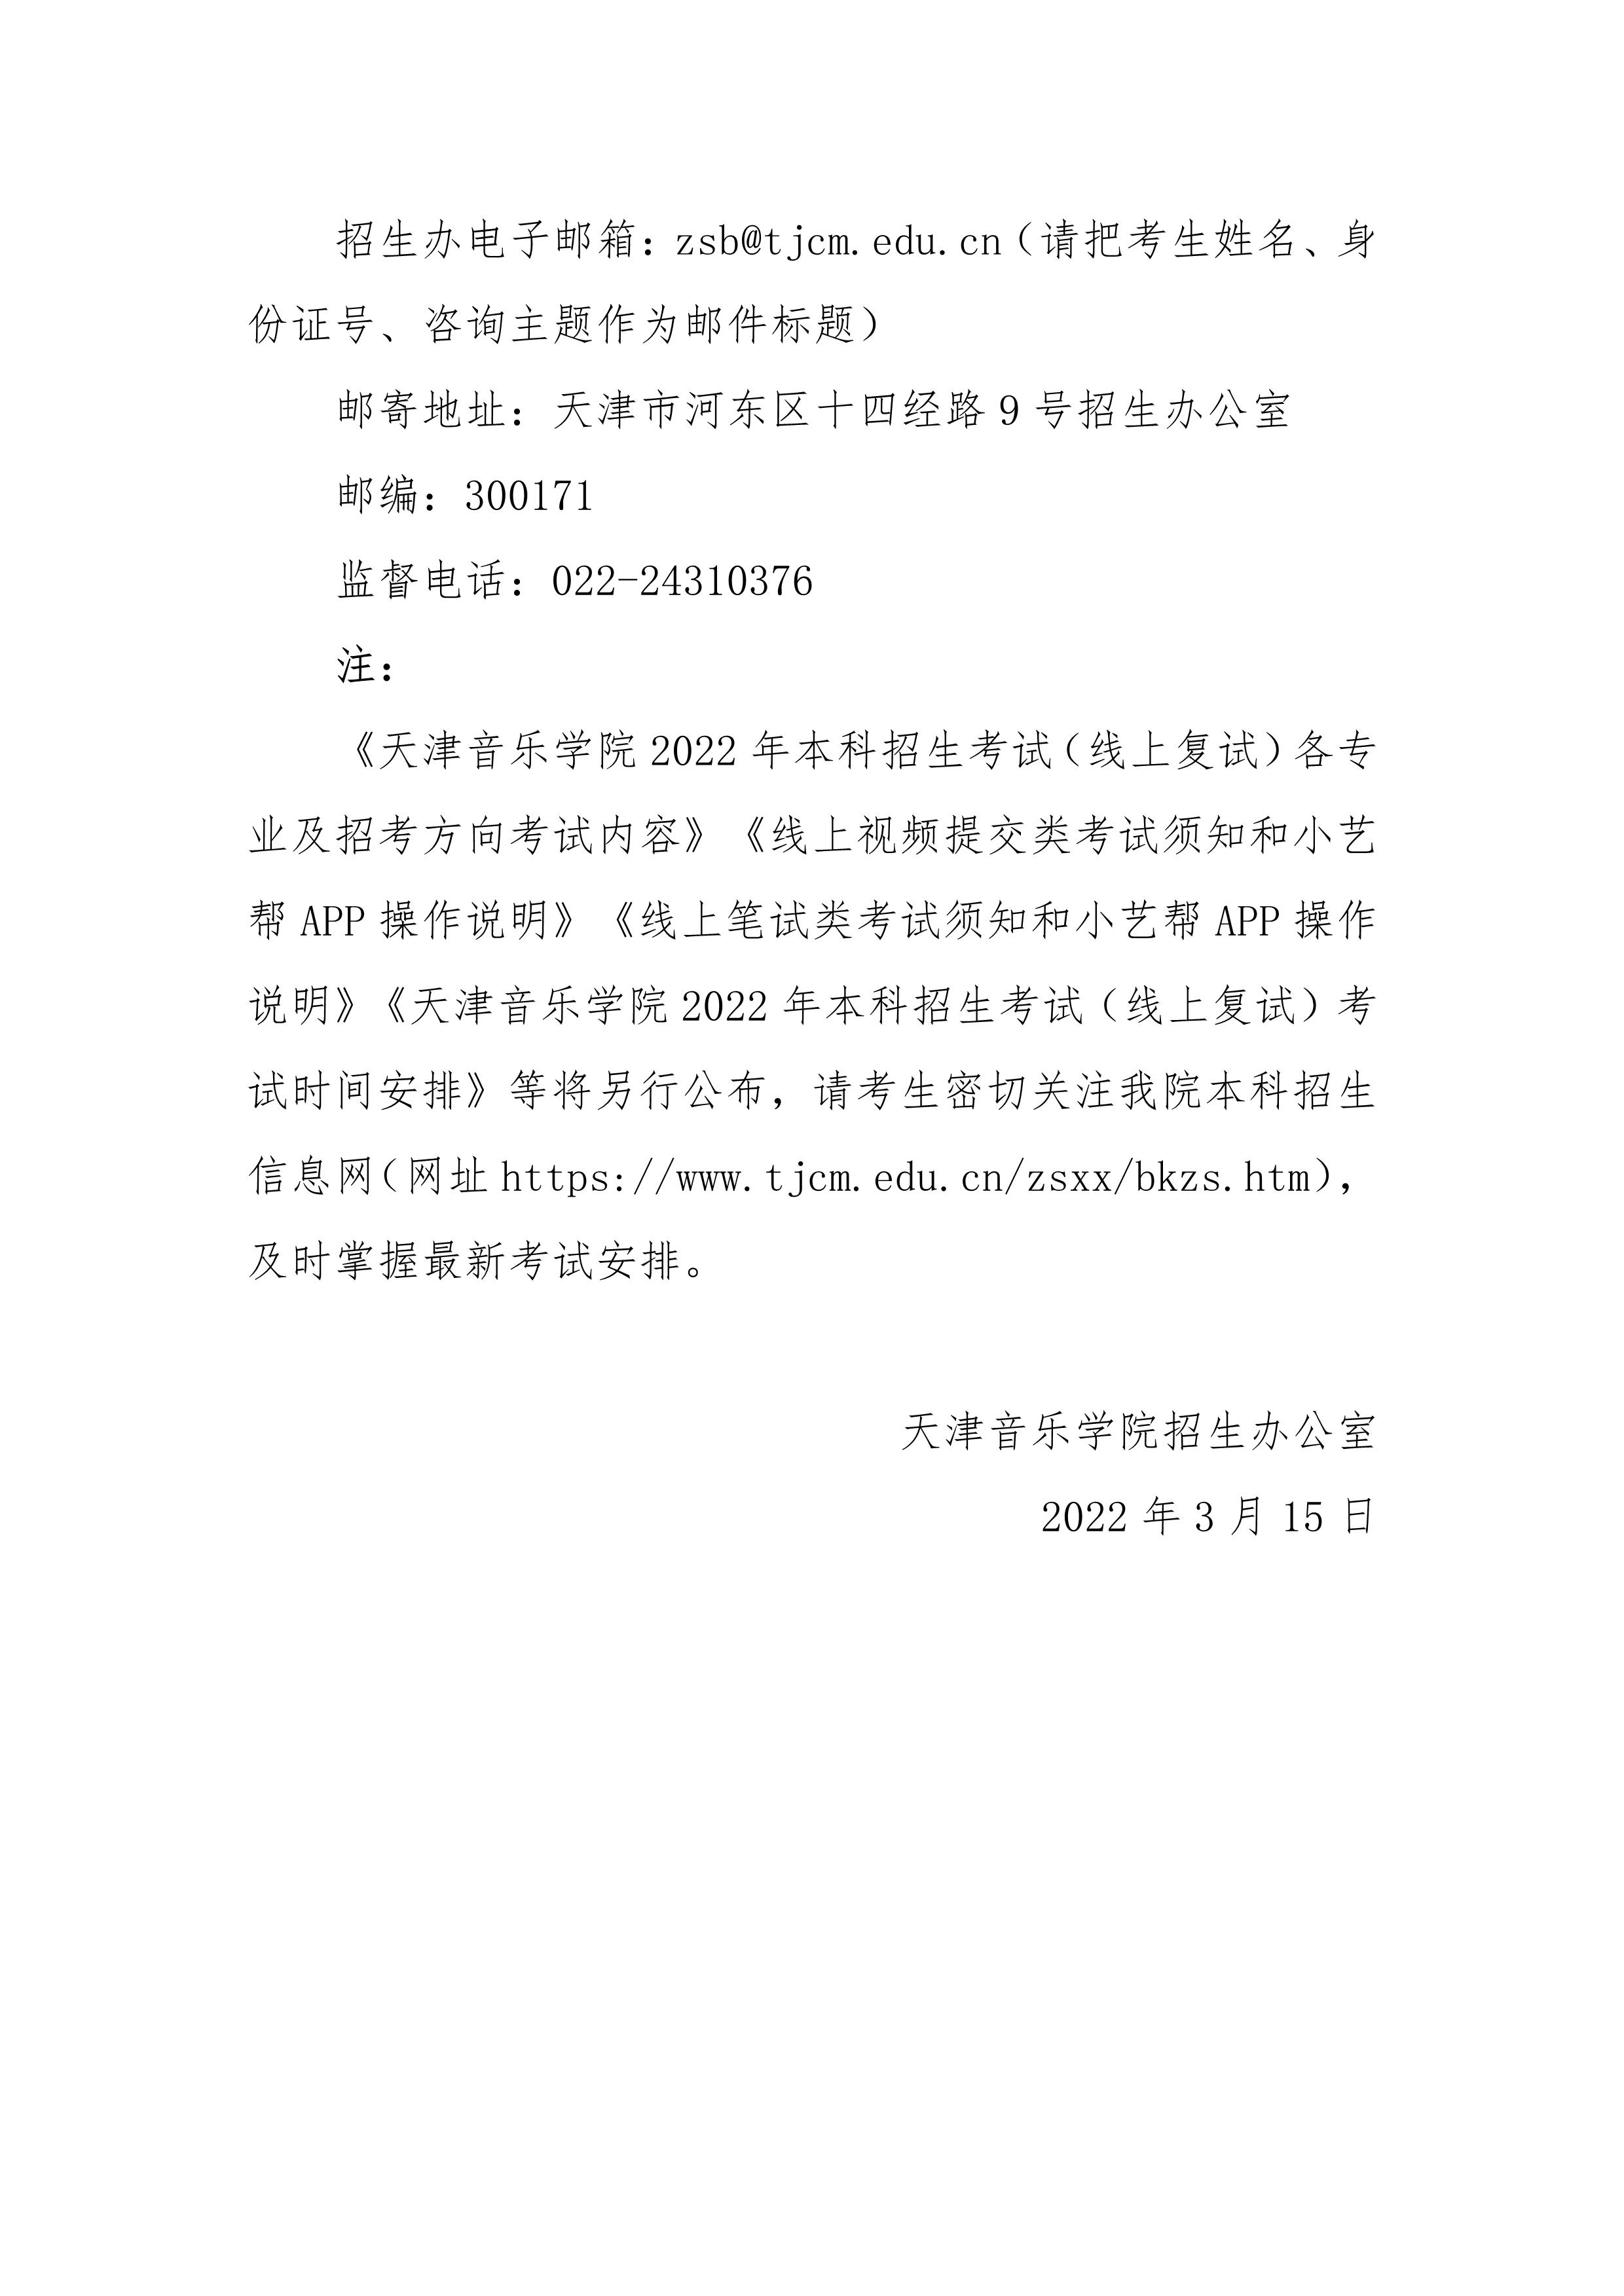 天津音乐学院关于调整2022年本科招生考试有关事项的通知_3.jpg